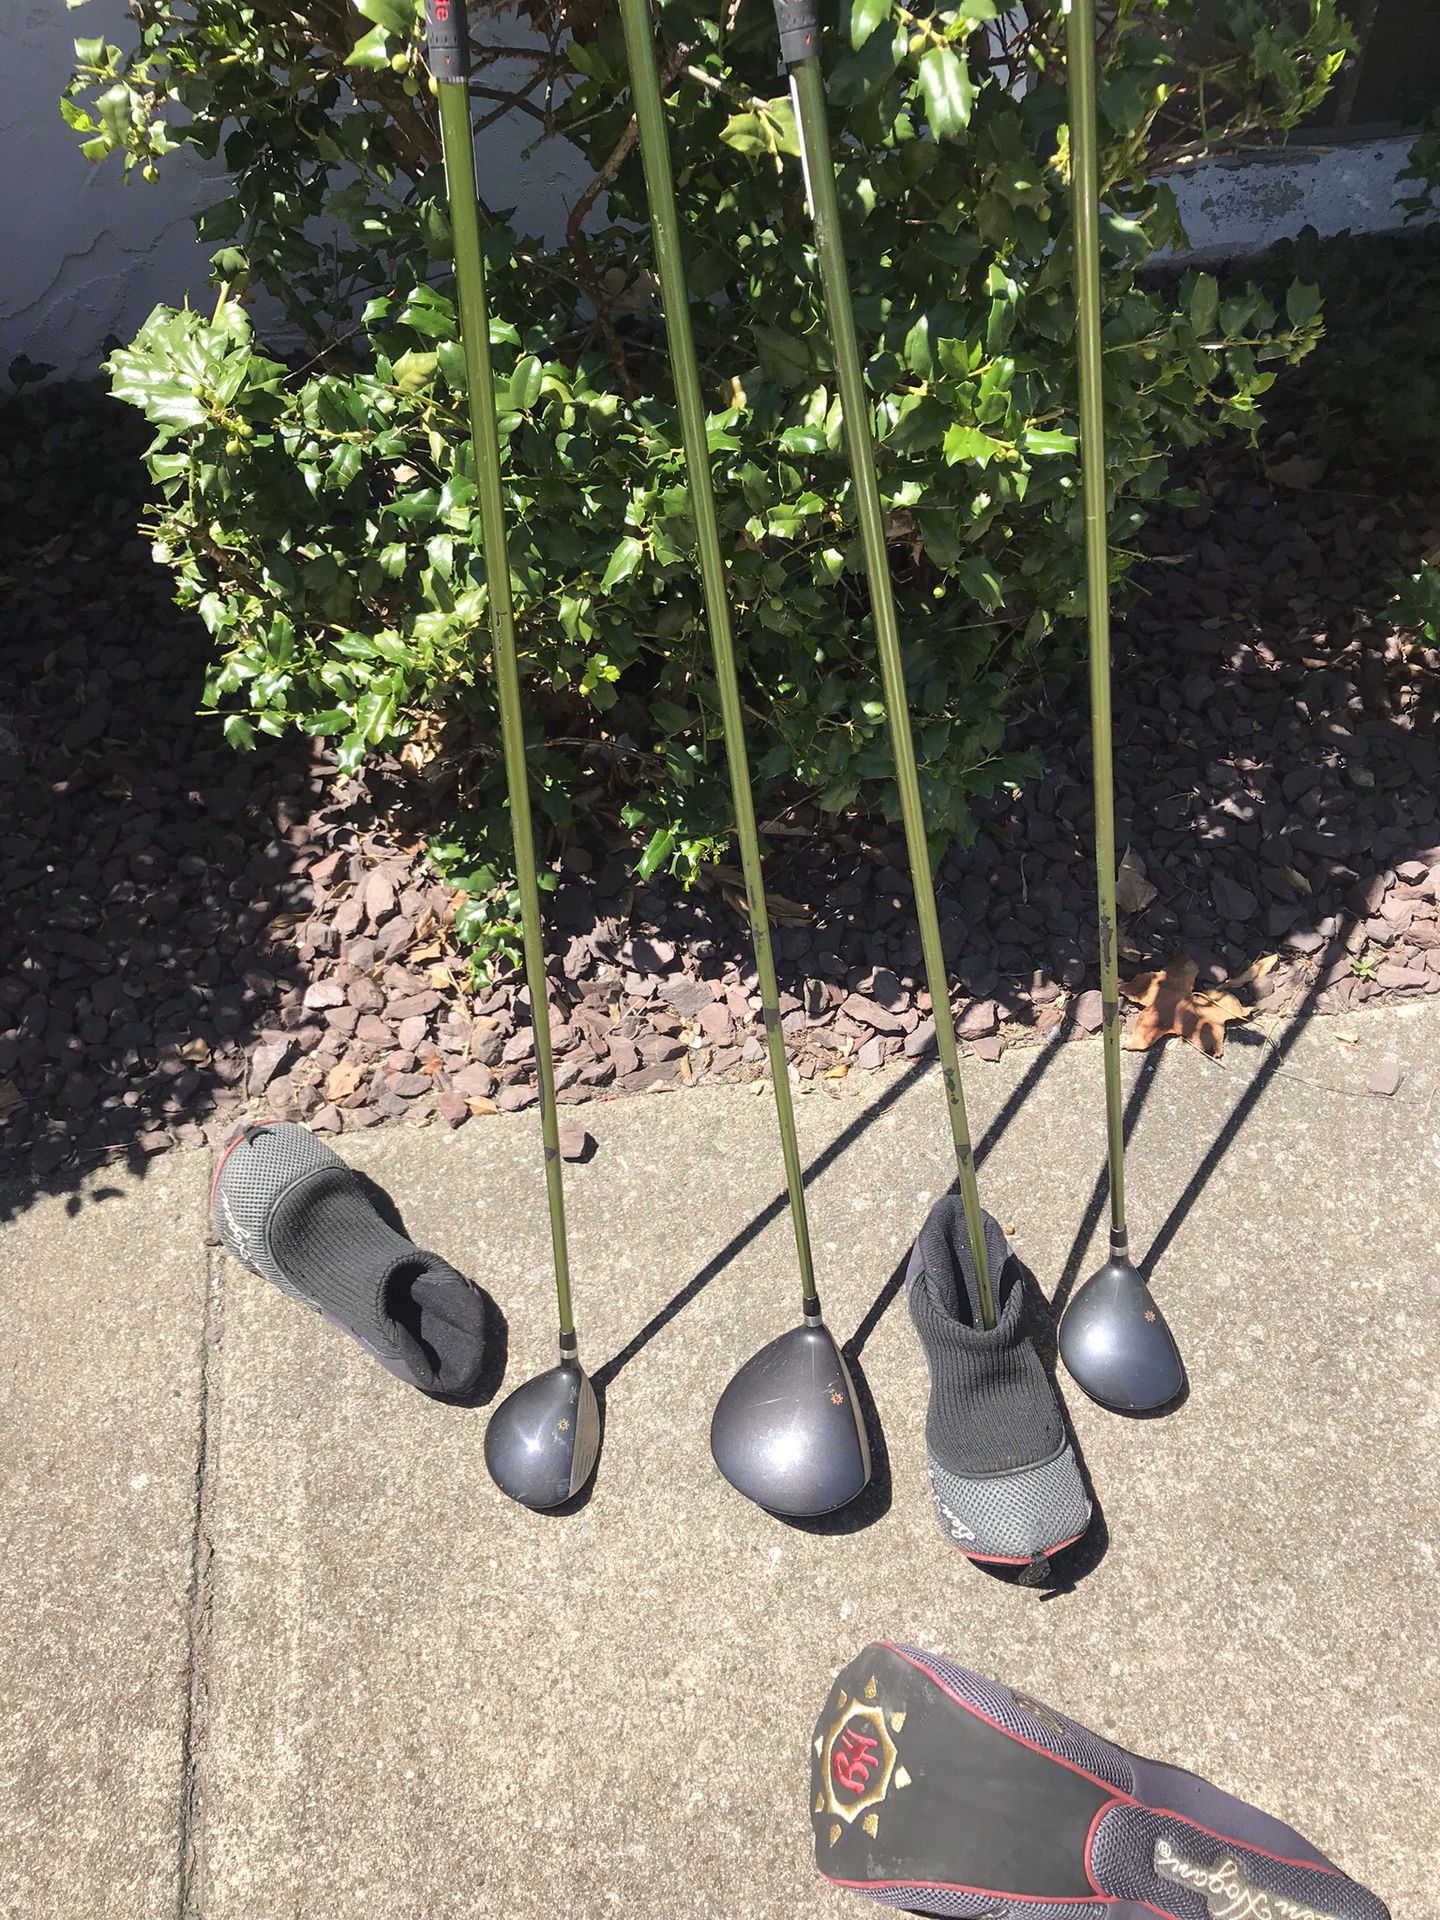 MacGregor golf clubs